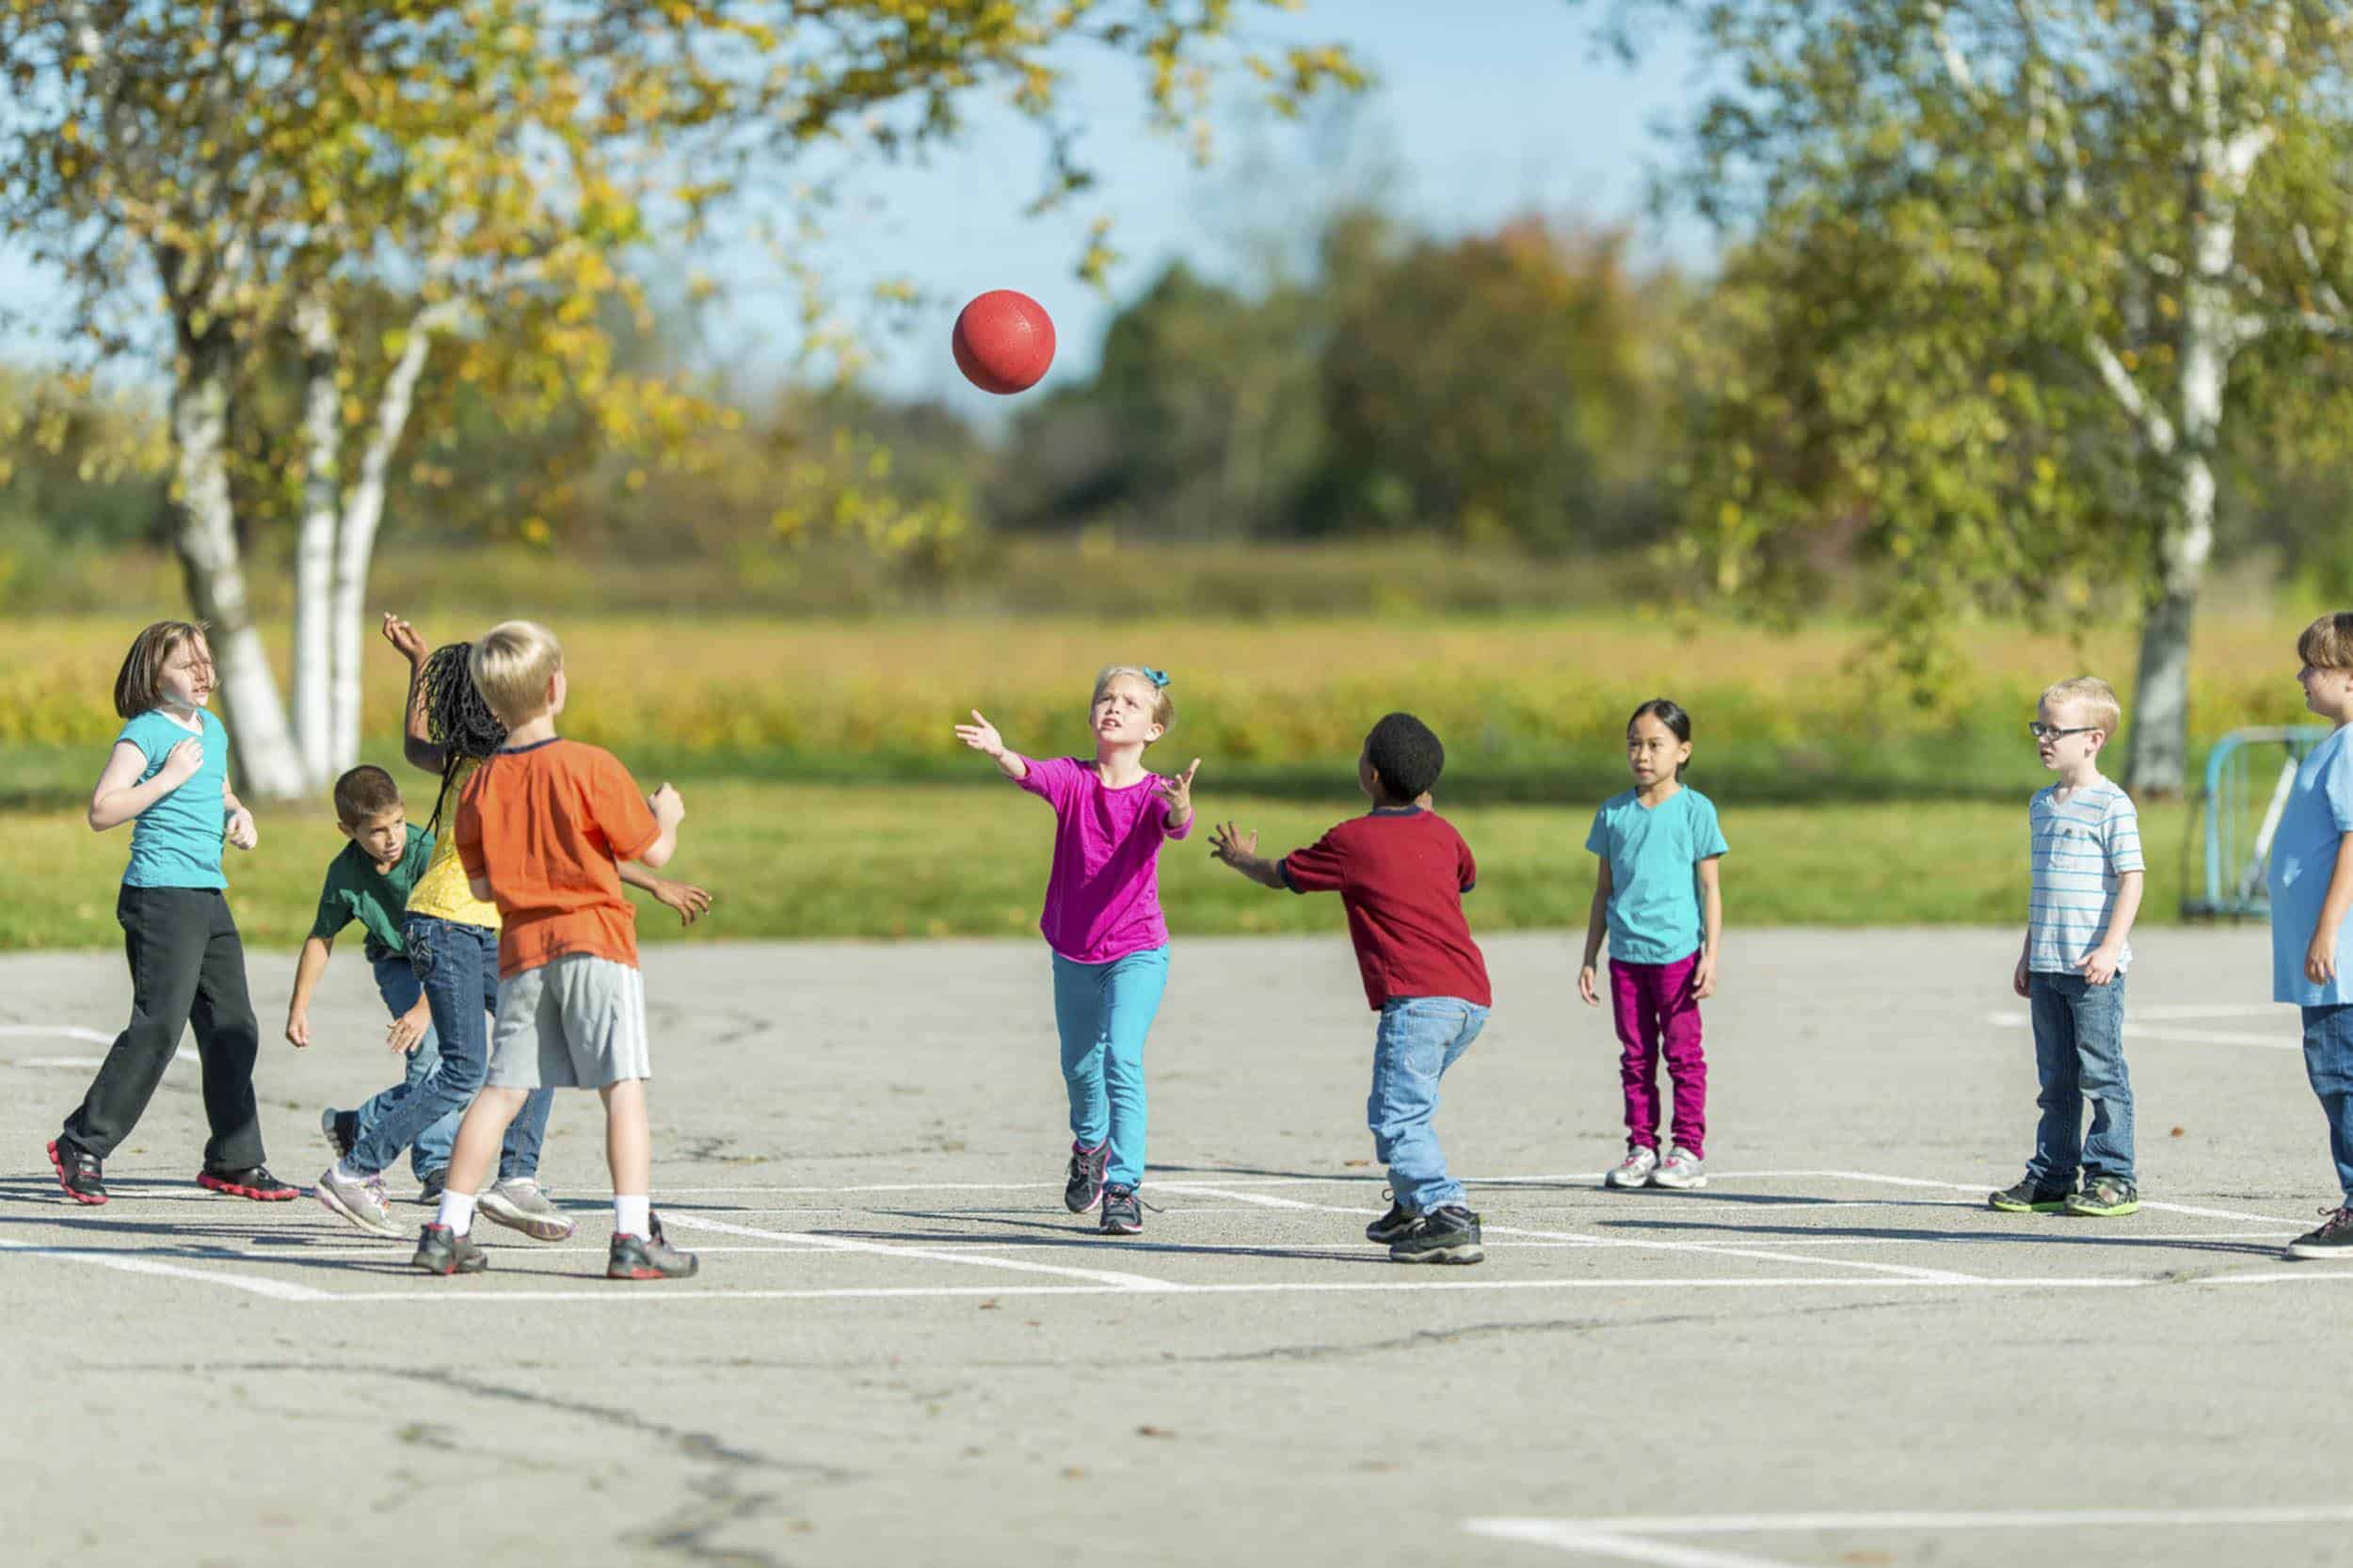 Обучение игре в мяч. Игры с мячом для детей. Дети улицы. Дети играют в мяч. Двигательная активность детей.